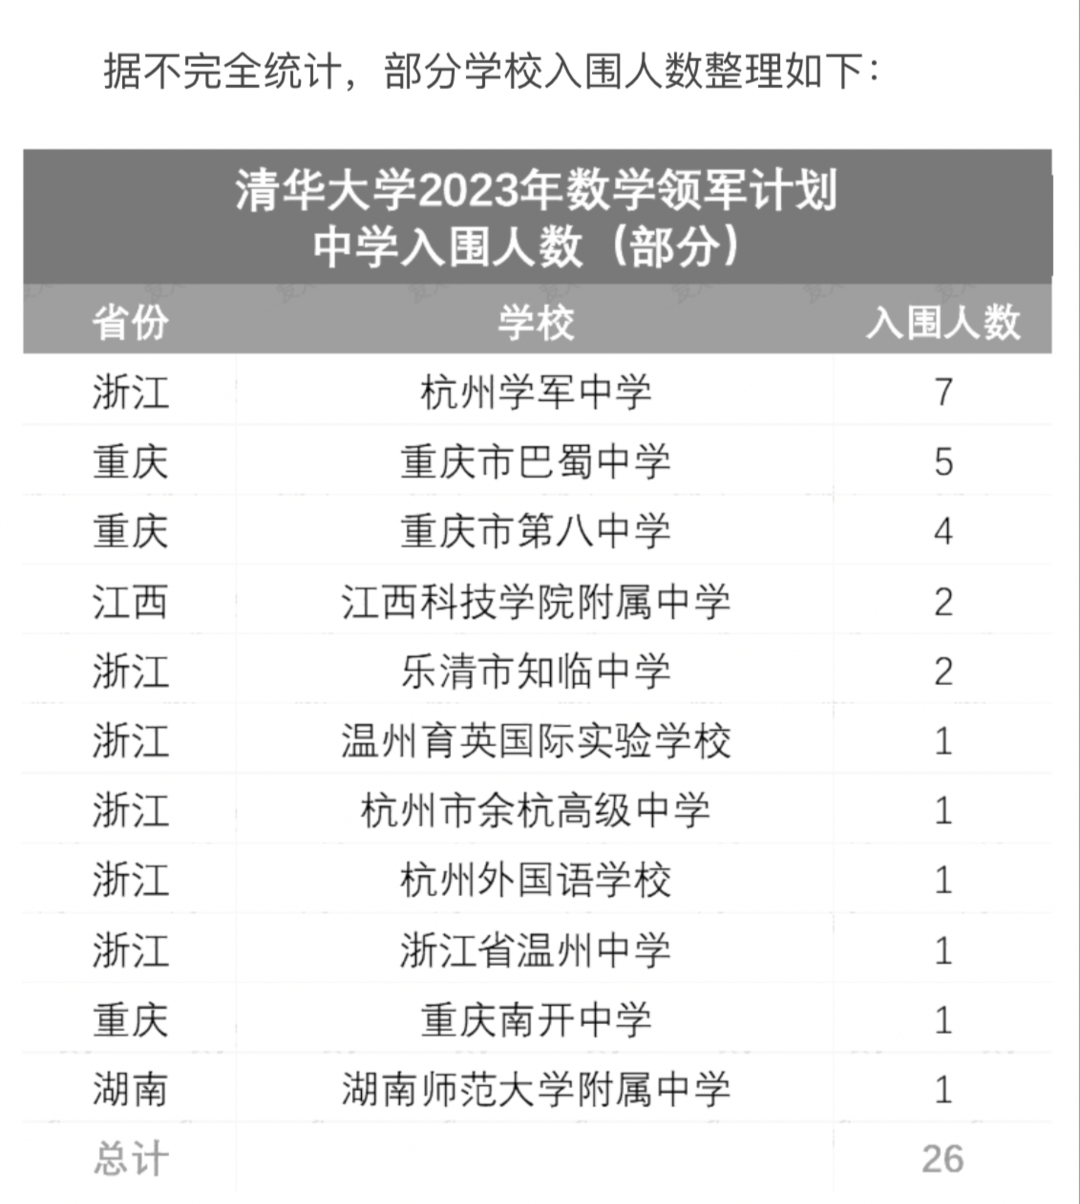 2023清华大学丘成桐数学领军计划第一批次入围名单公布